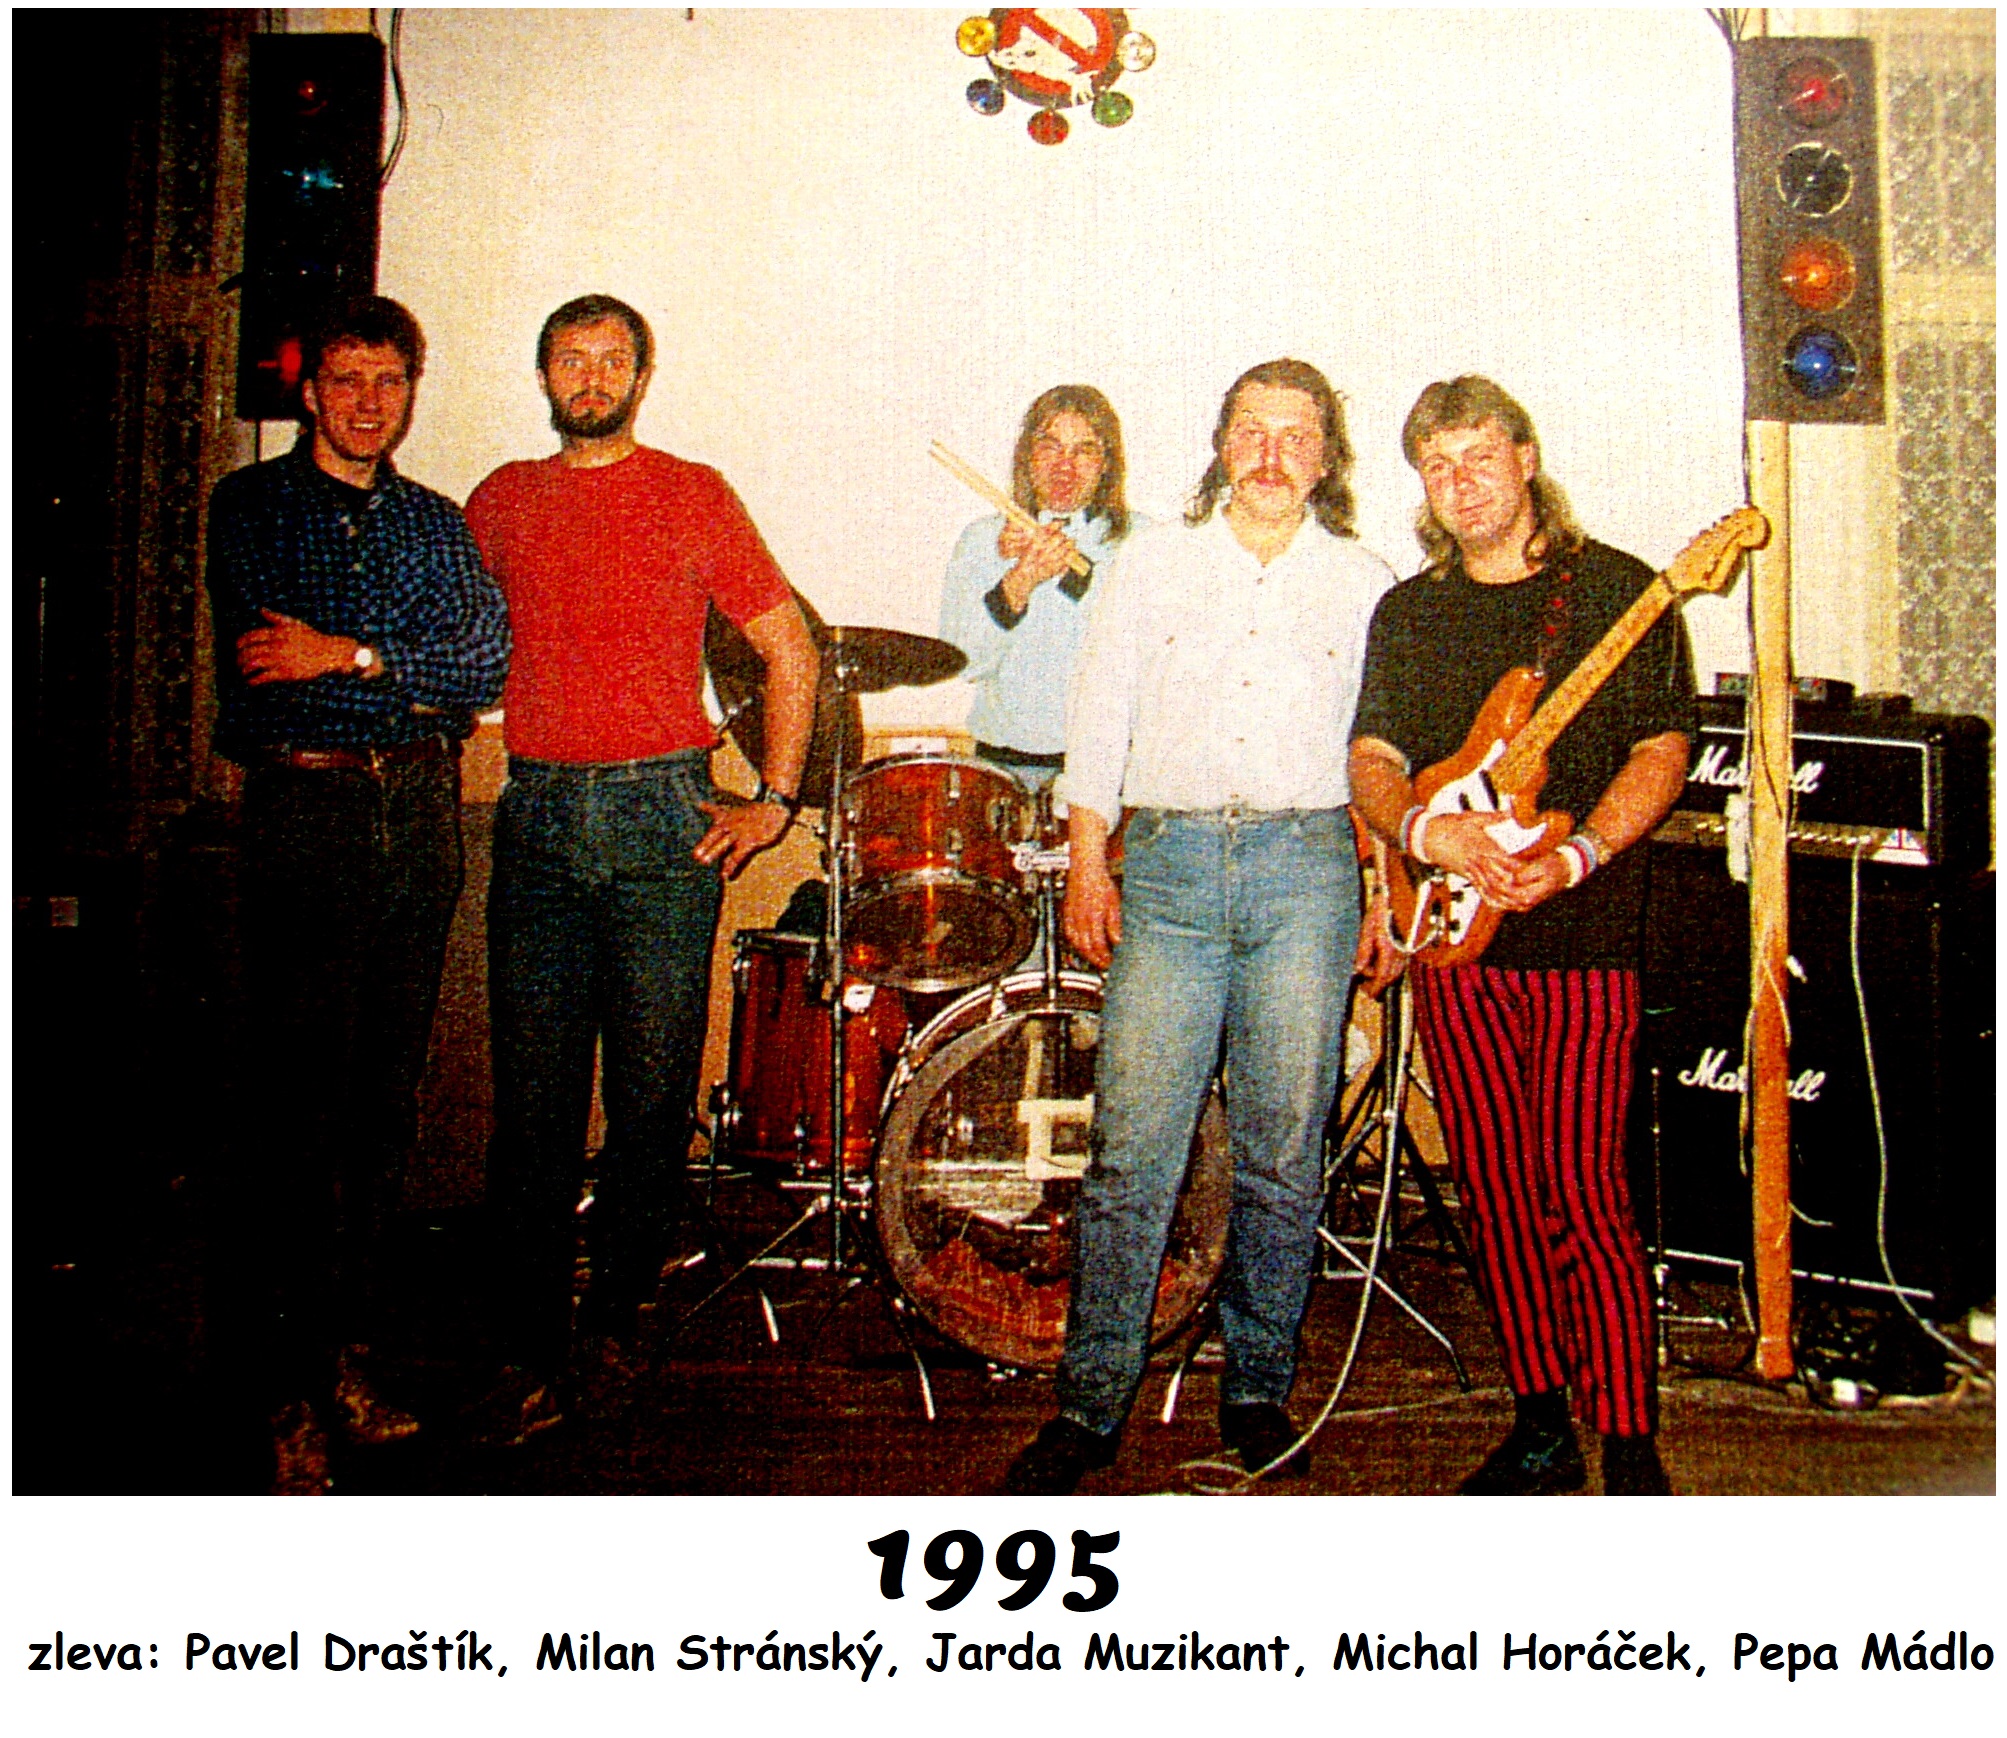 11.  ROTACE 1995 (zleva Pavel Drastik, Milan Stransky, Jarda Muzikant, Michal Horacek, Pepa Madlo)